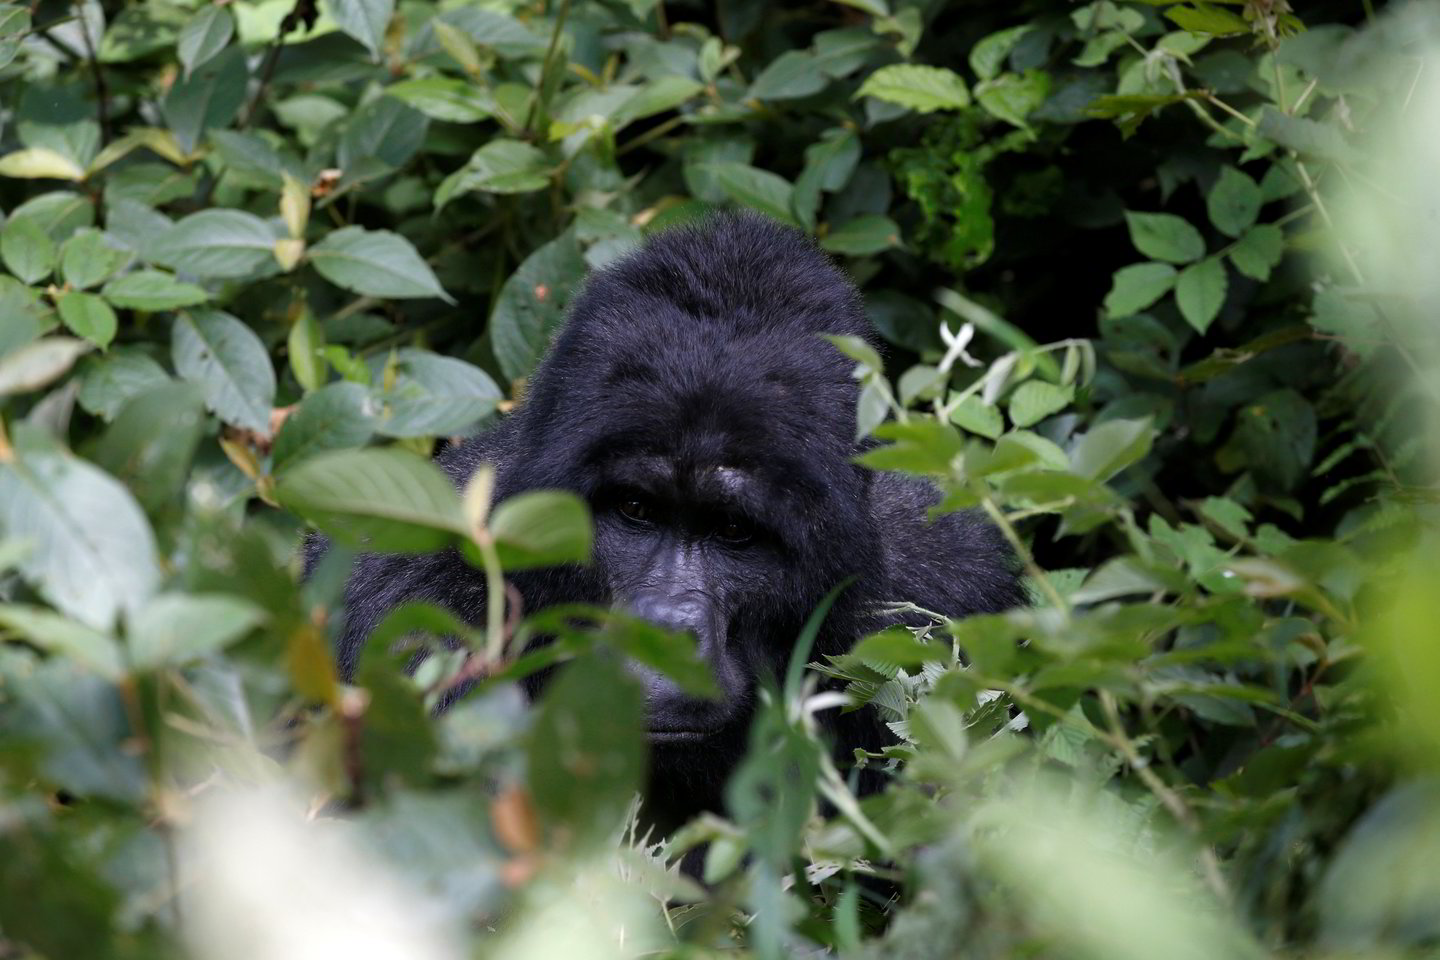  Rezultatai rodo, kad Vakarų lygumų gorilų pusiaujo Vakarų Afrikoje yra beveik 362 tūkstančių. Ankstesnis tikėtinas skaičius buvo 150–250 tūkst. individų.<br> Scanpix/MEGA/Reuters nuotr.